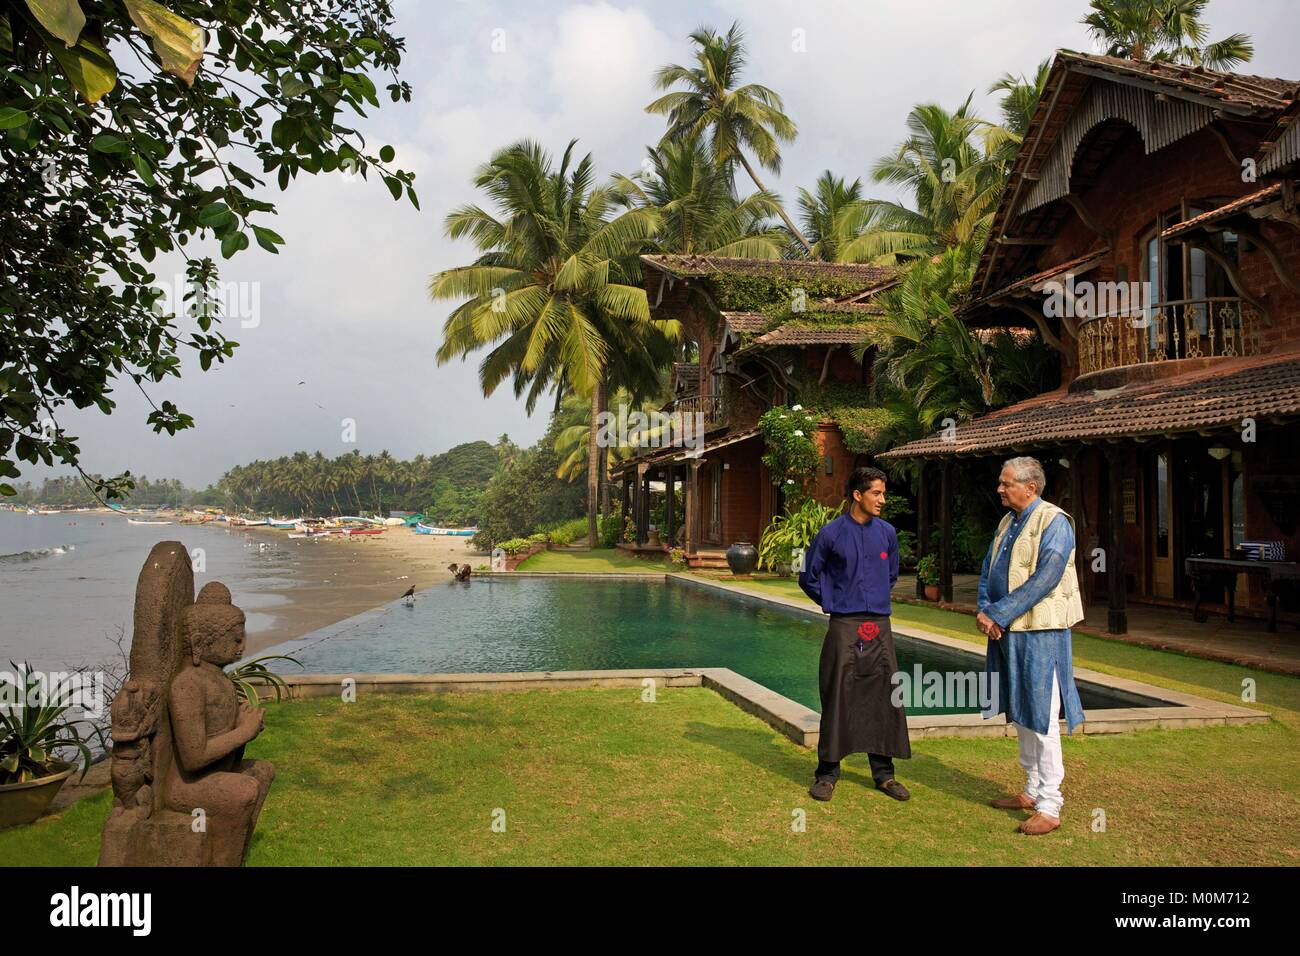 Indien, Goa, Coco Beach, Richard Holkar, Sohn des maharadjah von Indore, vor seinem Luxushotel Ahilya am Meer mit seinem Schwimmbad, vor einem Fischer Strand mit Kokospalmen gesäumt Stockfoto